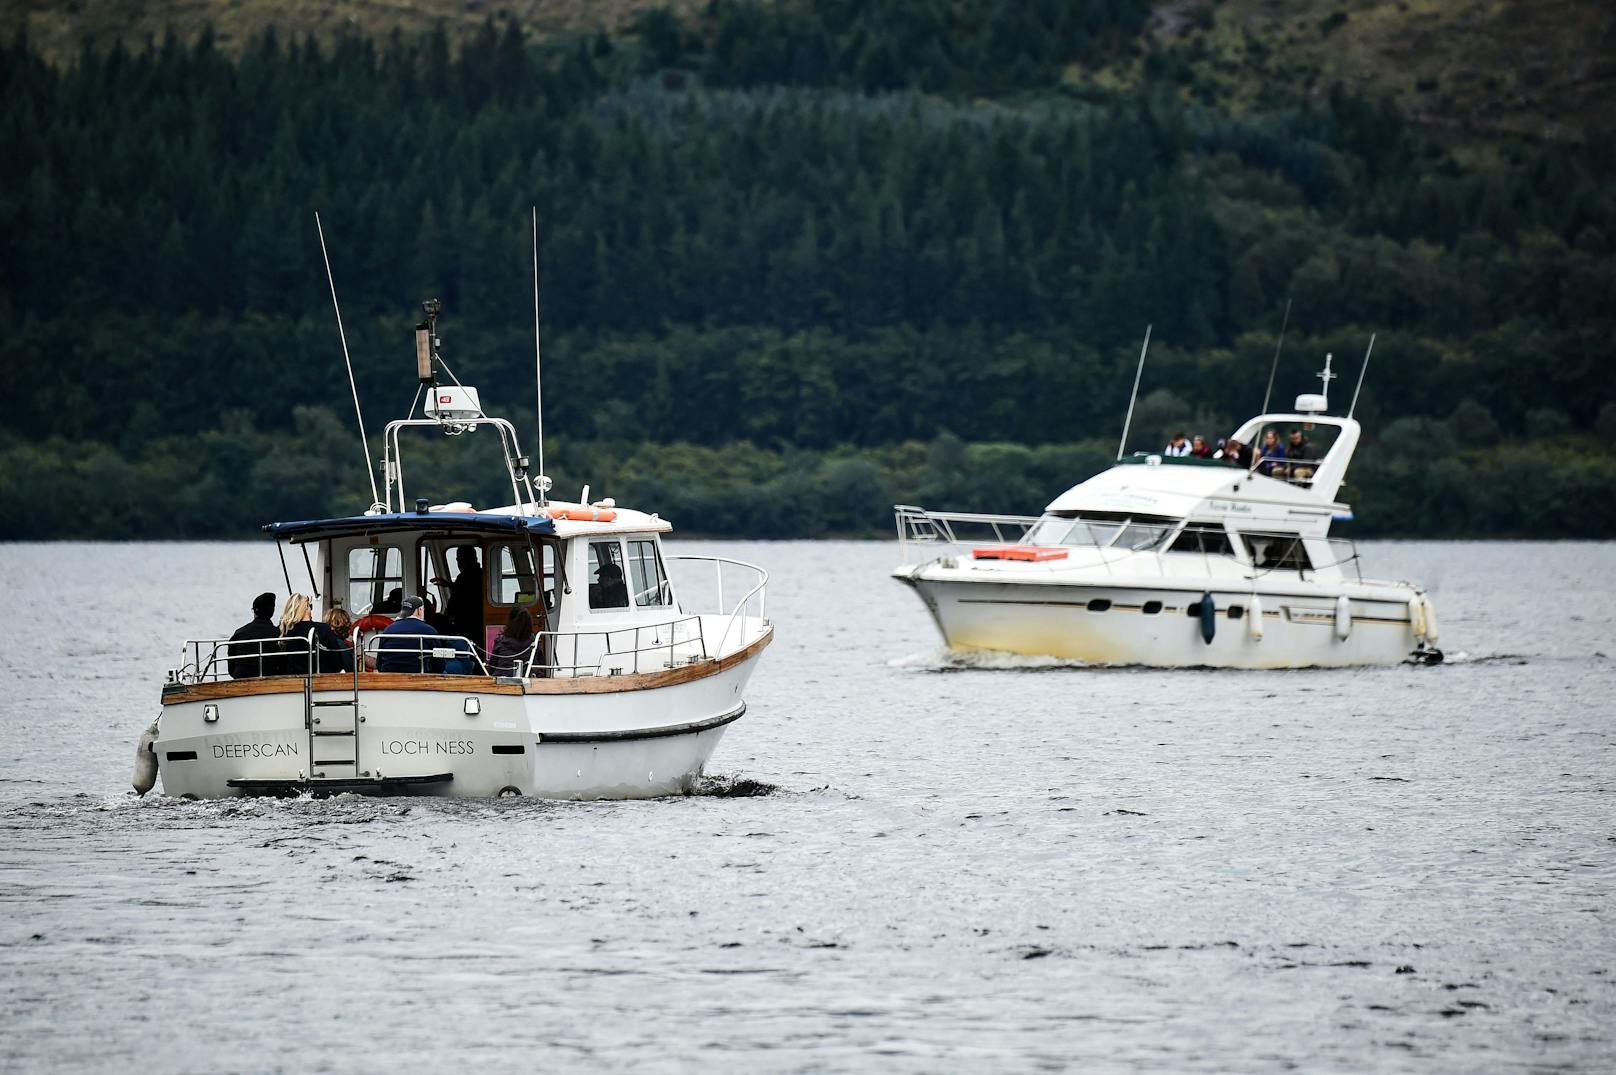 Wärmebildkameras, Drohnen und ein Hydrophon: Mit moderner Technik haben Freiwillige am Samstag im trüben Wasser von Loch Ness nach Spuren des mythischen Seeungeheuers gesucht.